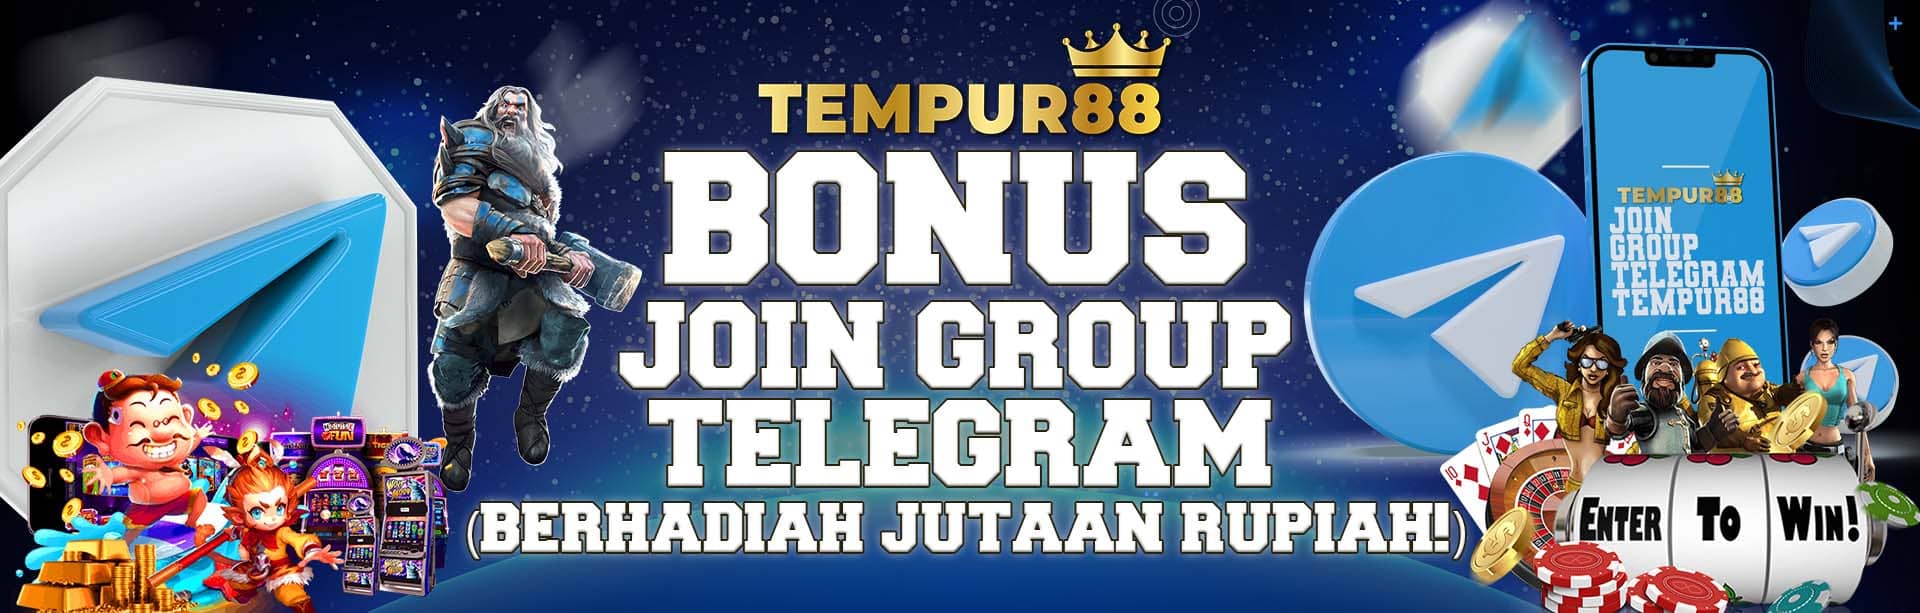 BONUS JOIN GROUP TELEGRAM (BERHADIAH JUTAAN RUPIAH!